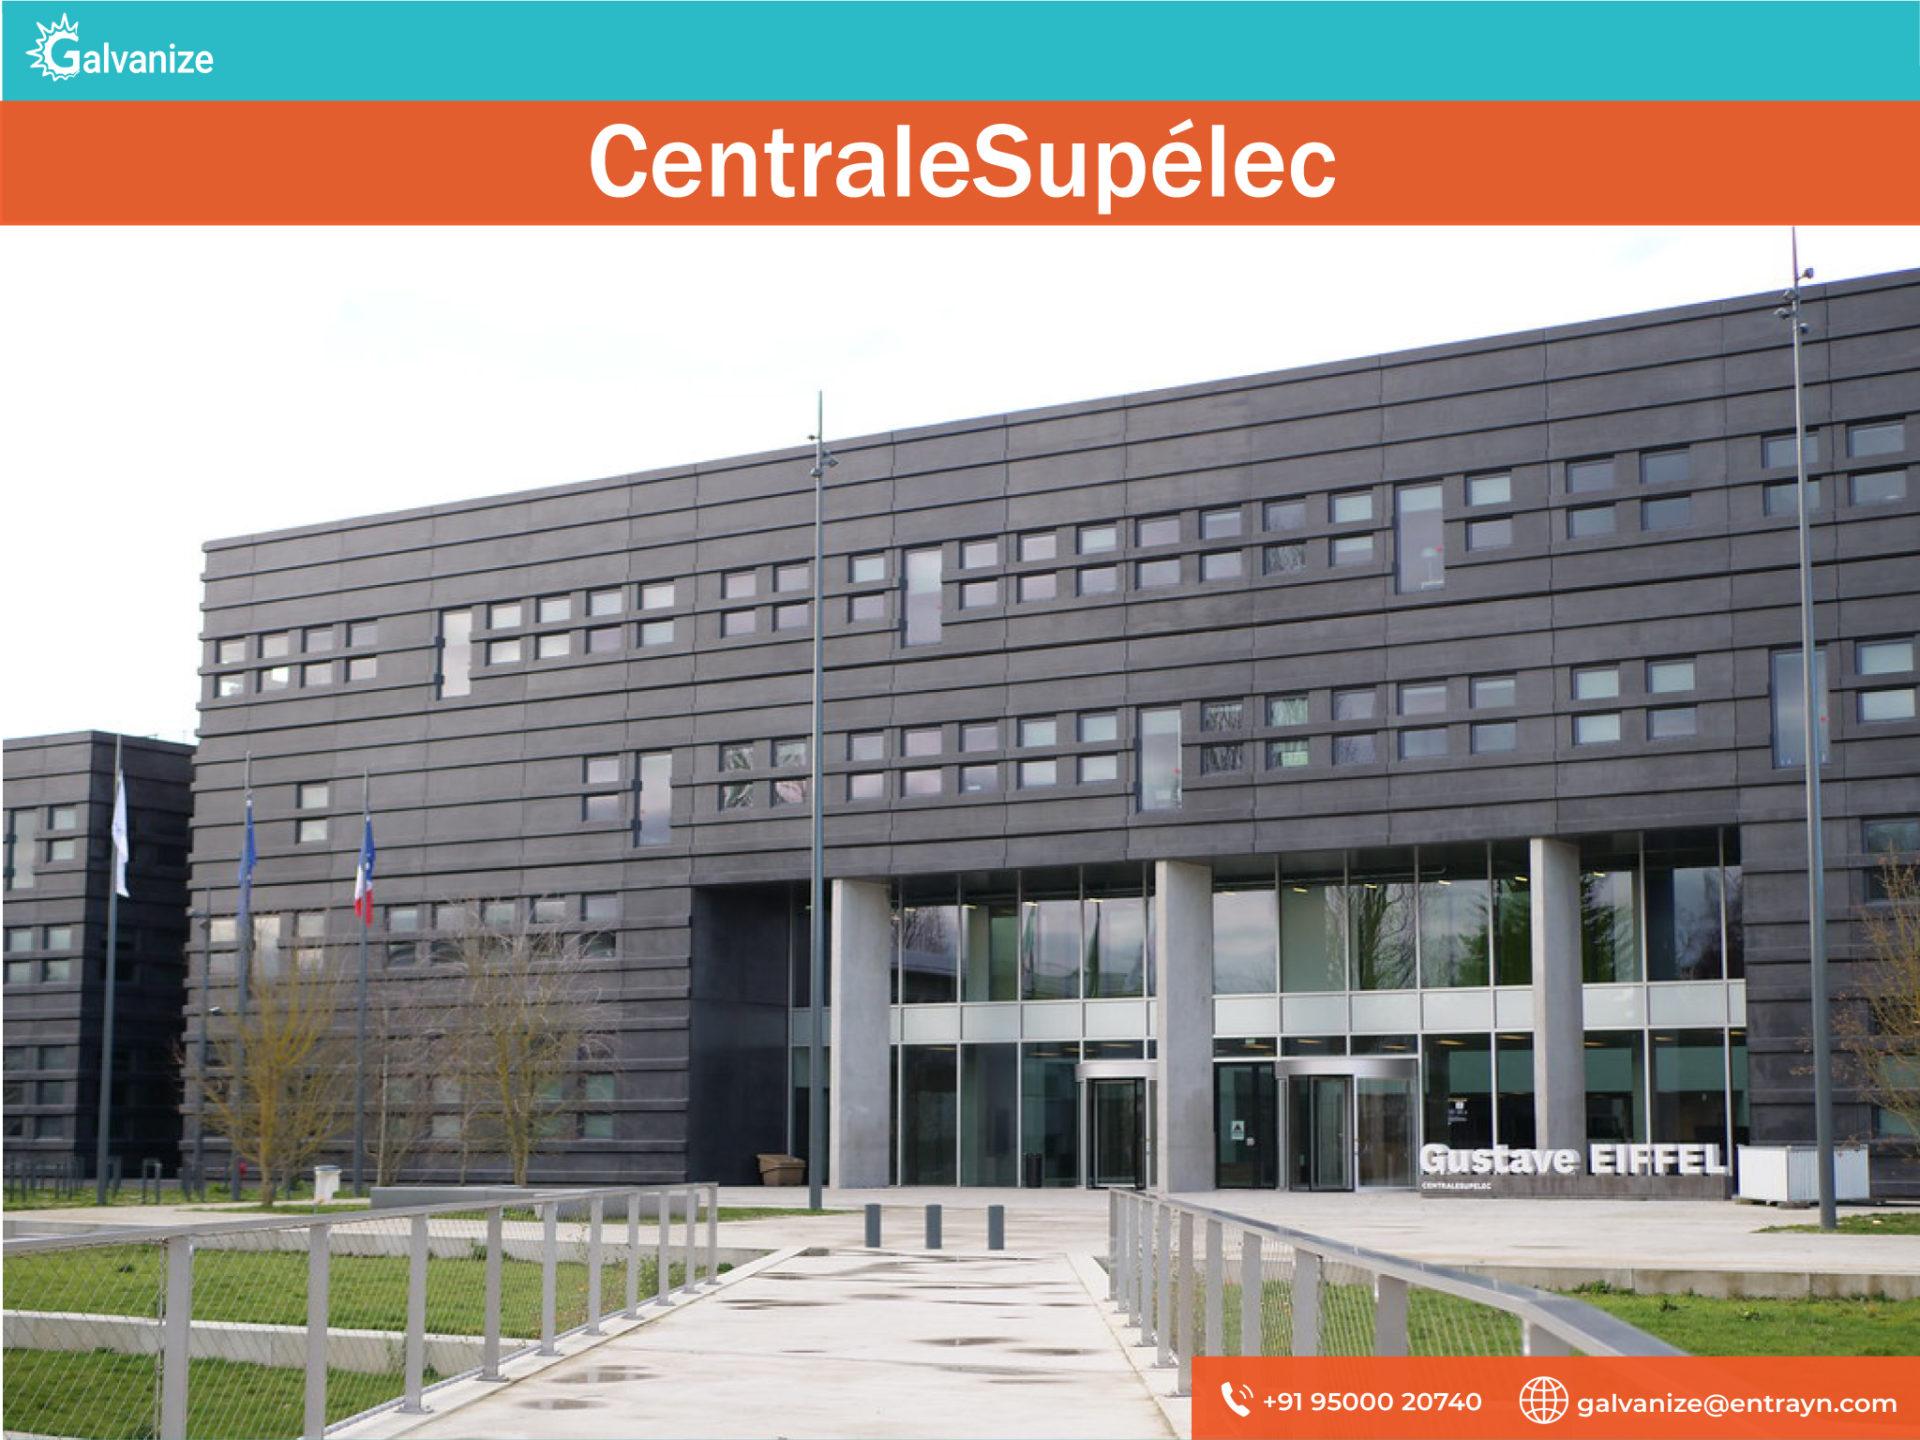 CentraleSupélecCentraleSupélec | Top Universities in France